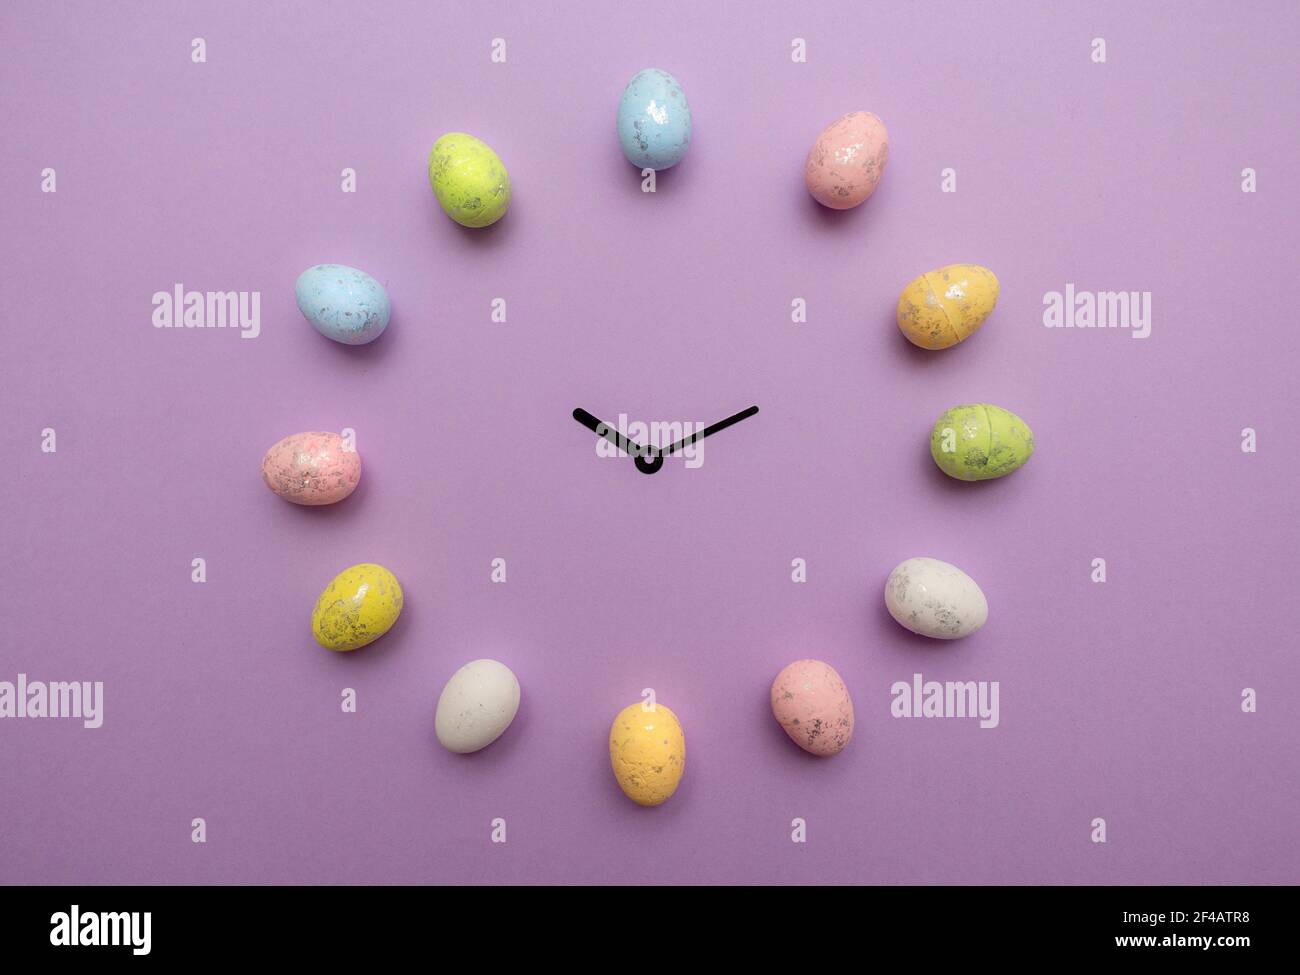 Les œufs de Pâques colorés forment une horloge avec les mains de l'horloge au milieu sur fond violet. Concept vacances de printemps Banque D'Images